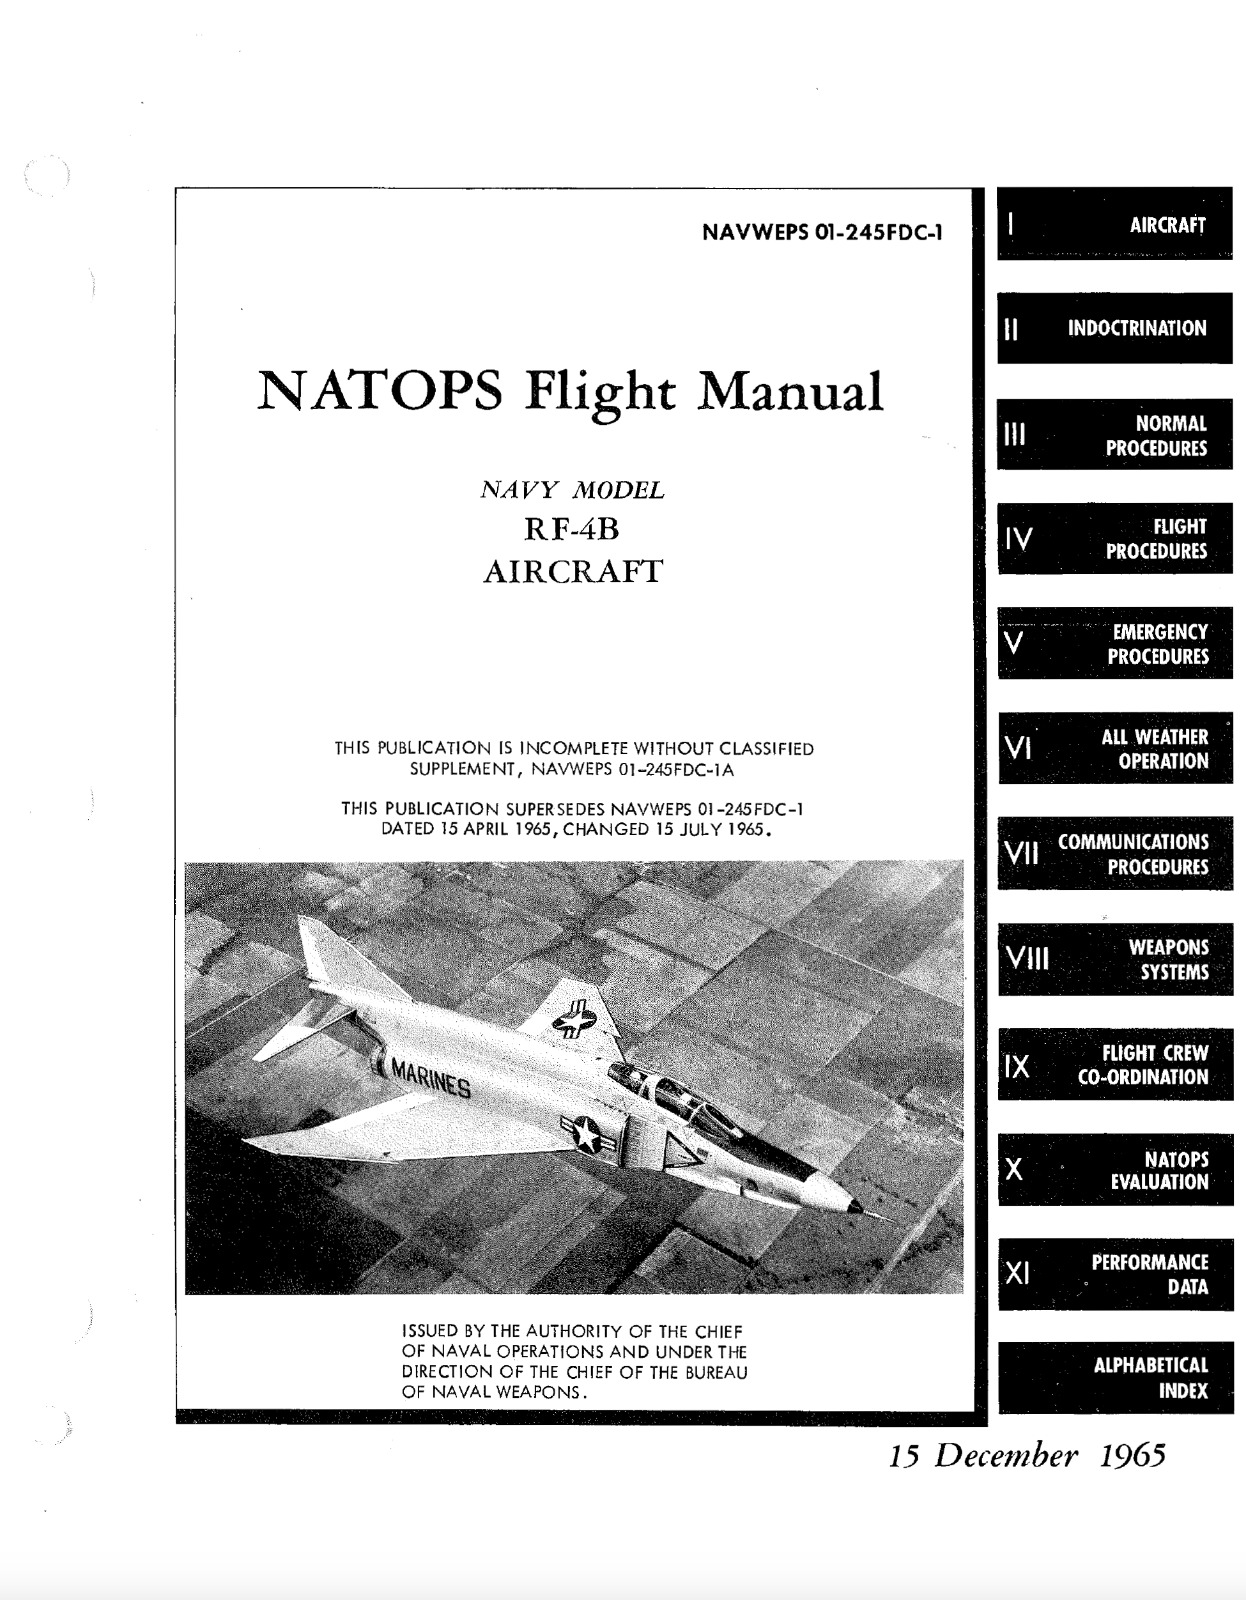 372 Page 1965 RF-4B Phantom II NAVWEPS 01-245FDC-1 Flight Manual on CD